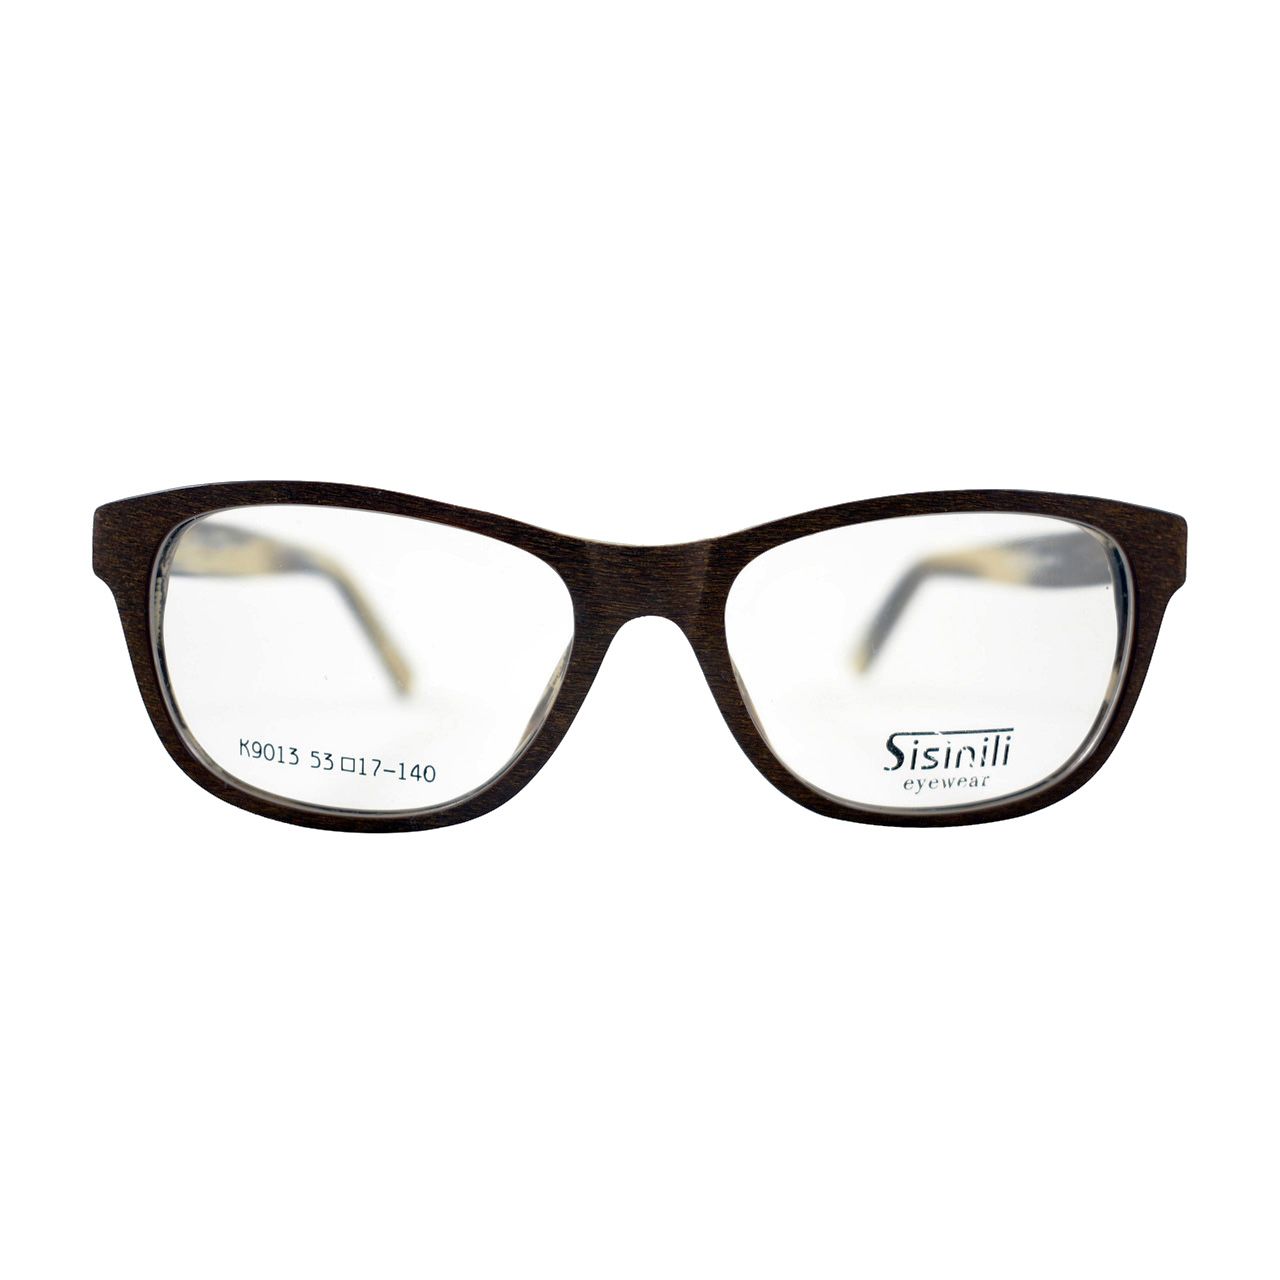 فریم عینک طبی زنانه سیسینیلی مدل K9013 -  - 1